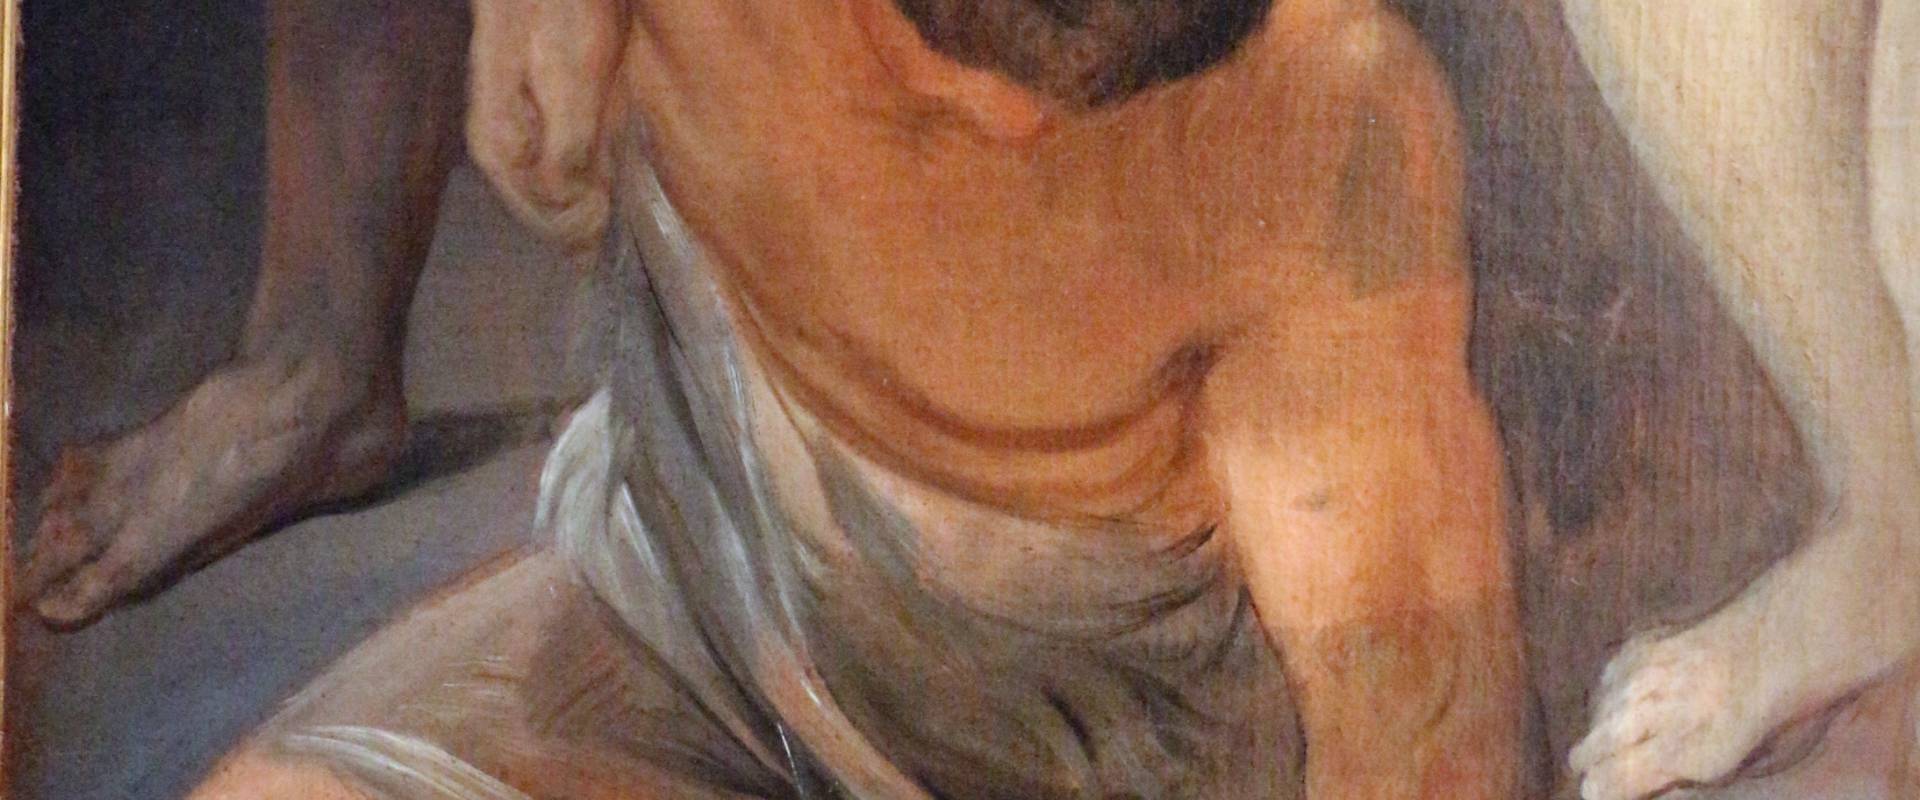 Guido reni, flagellazione, 1640 ca., 02 foto di Sailko